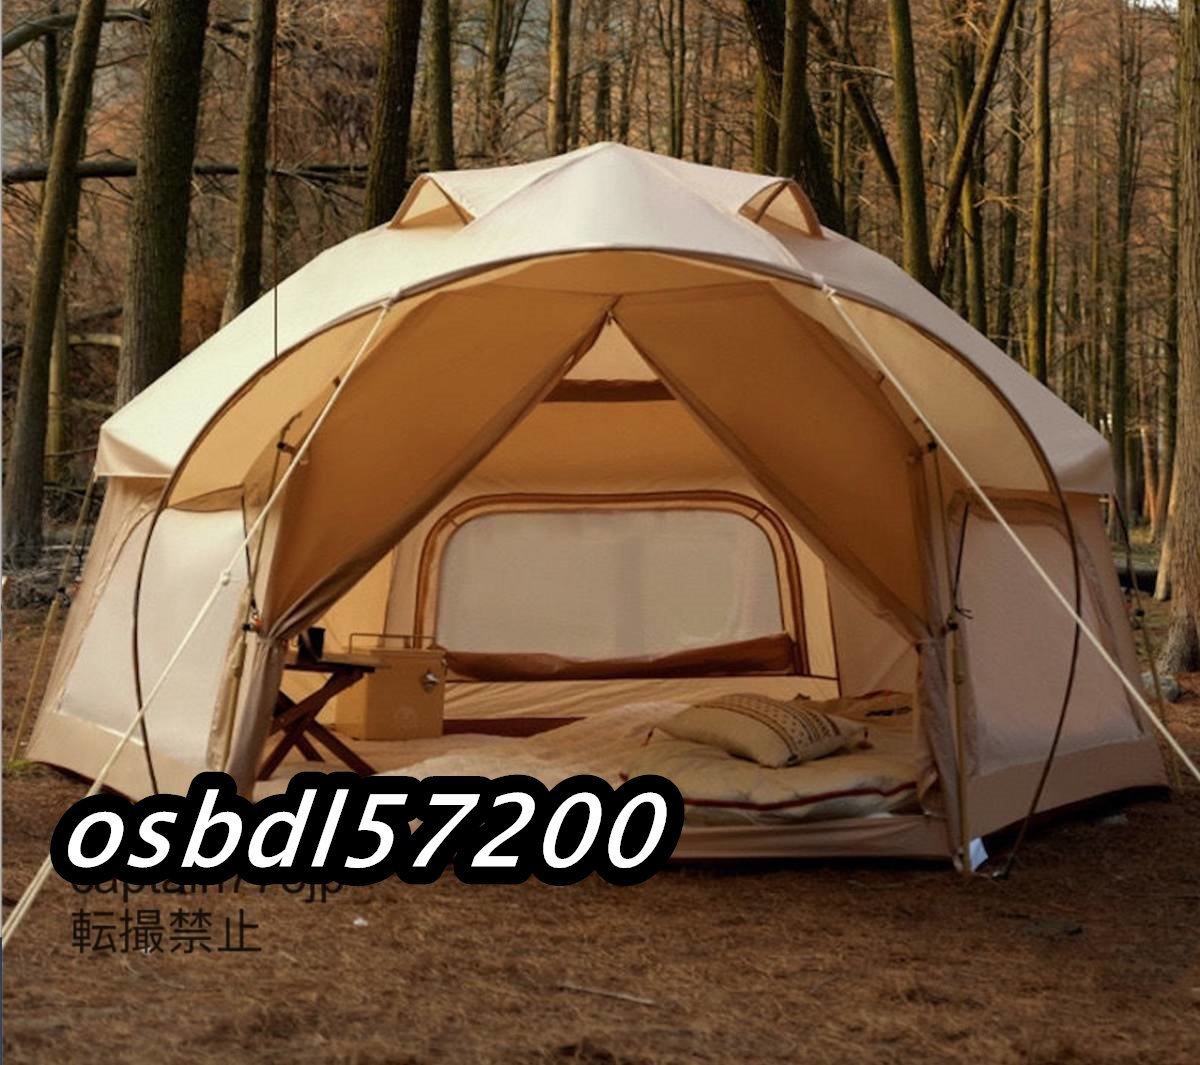 高品質★テント ワンタッチ テント オールシーズン使える ファミリー 公園 収納袋付き 4-5人用 ポップアップテント ドーム型テント